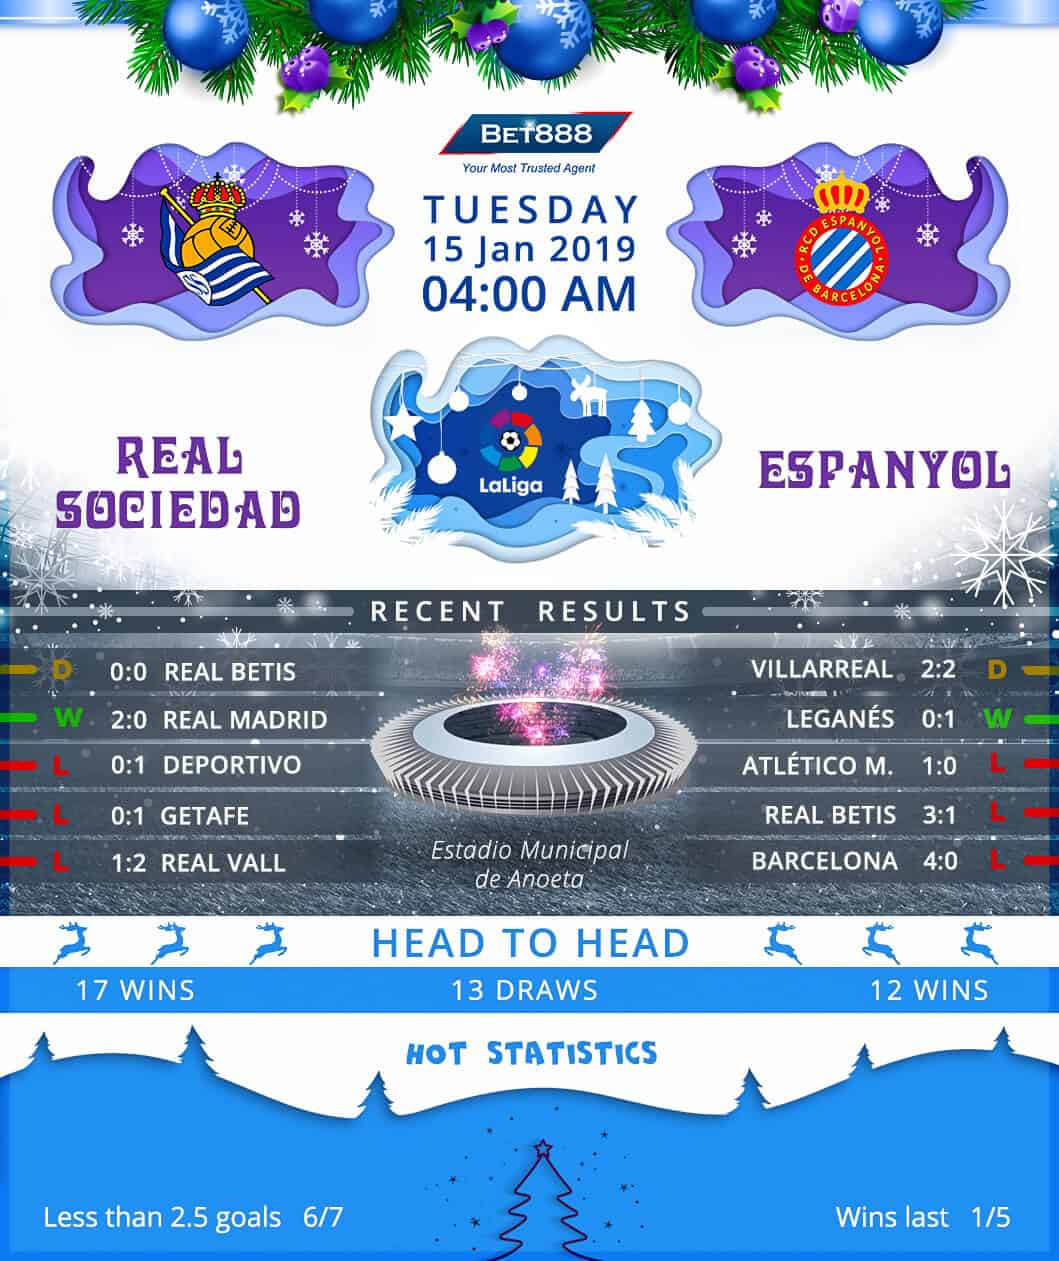 Real Sociedad vs Espanyol 15/01/19